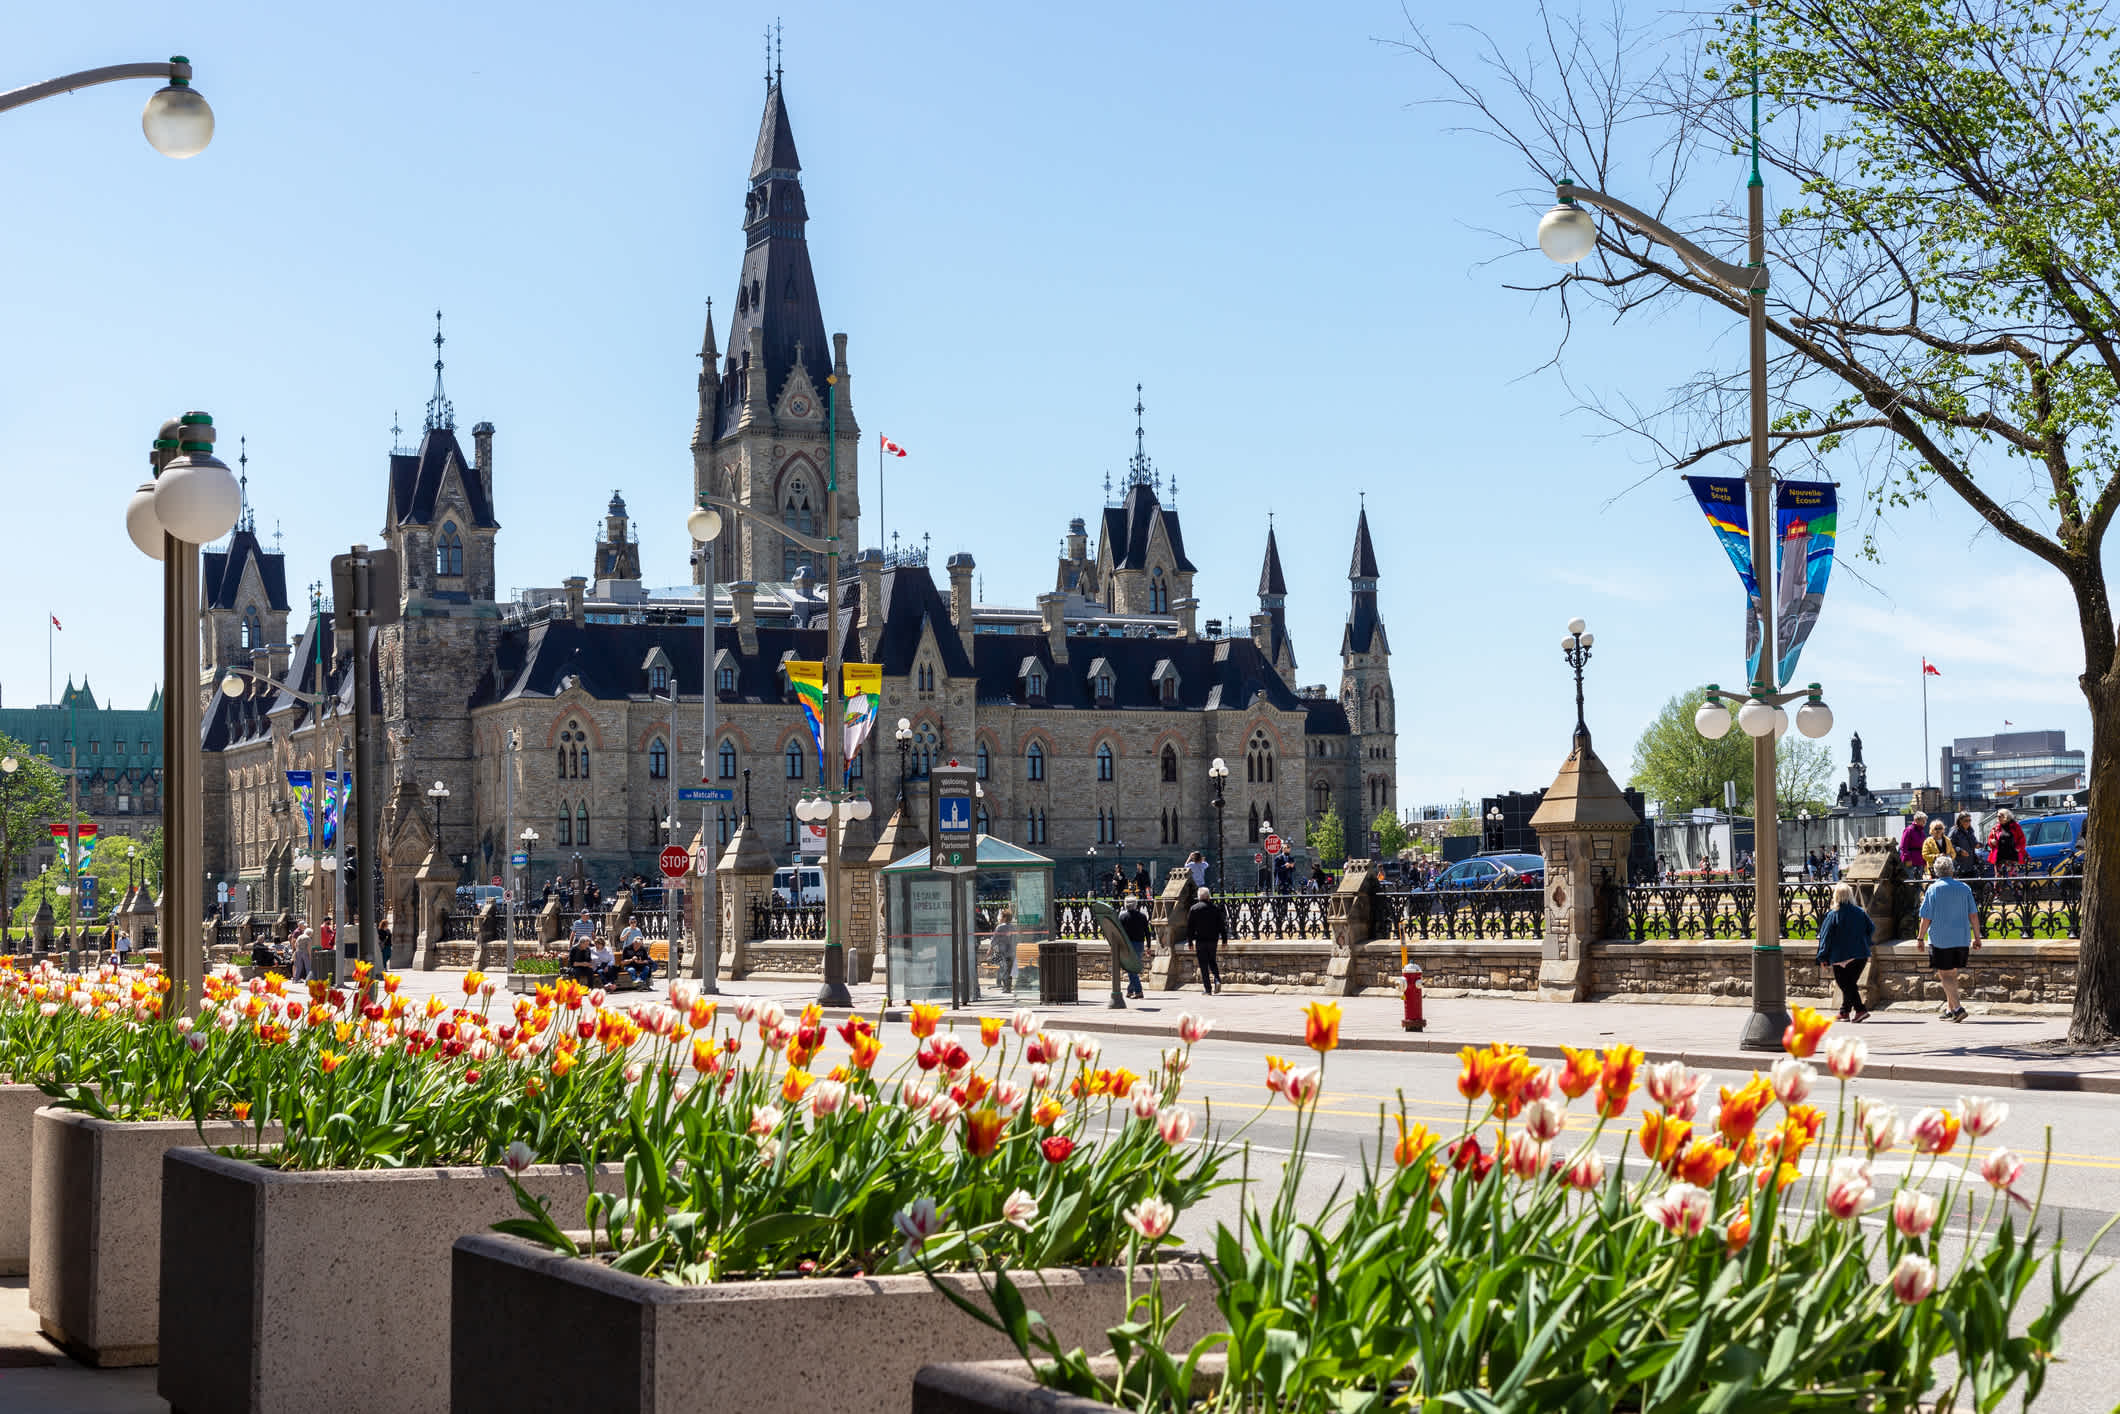 Dans le paysage urbain d'Ottawa, on remarque surtout le bâtiment du Parlement datant du XIXe siècle.